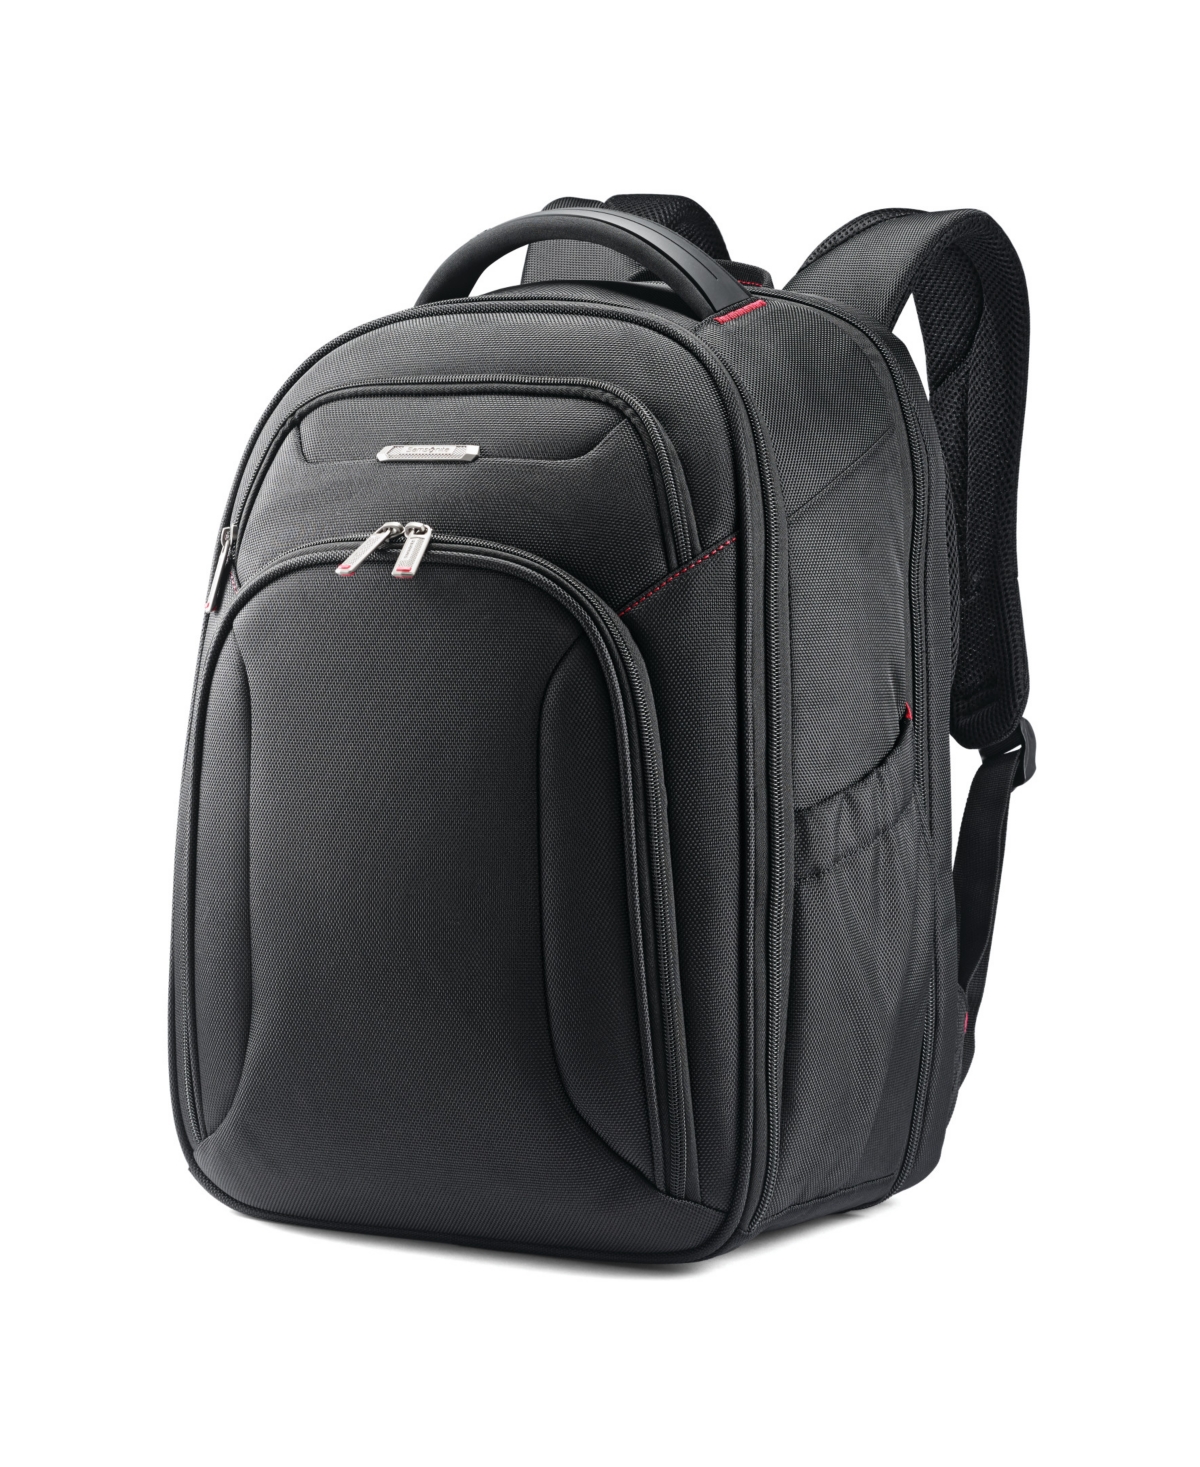 Samsonite Xenon 3.0 Slim Backpack In Black